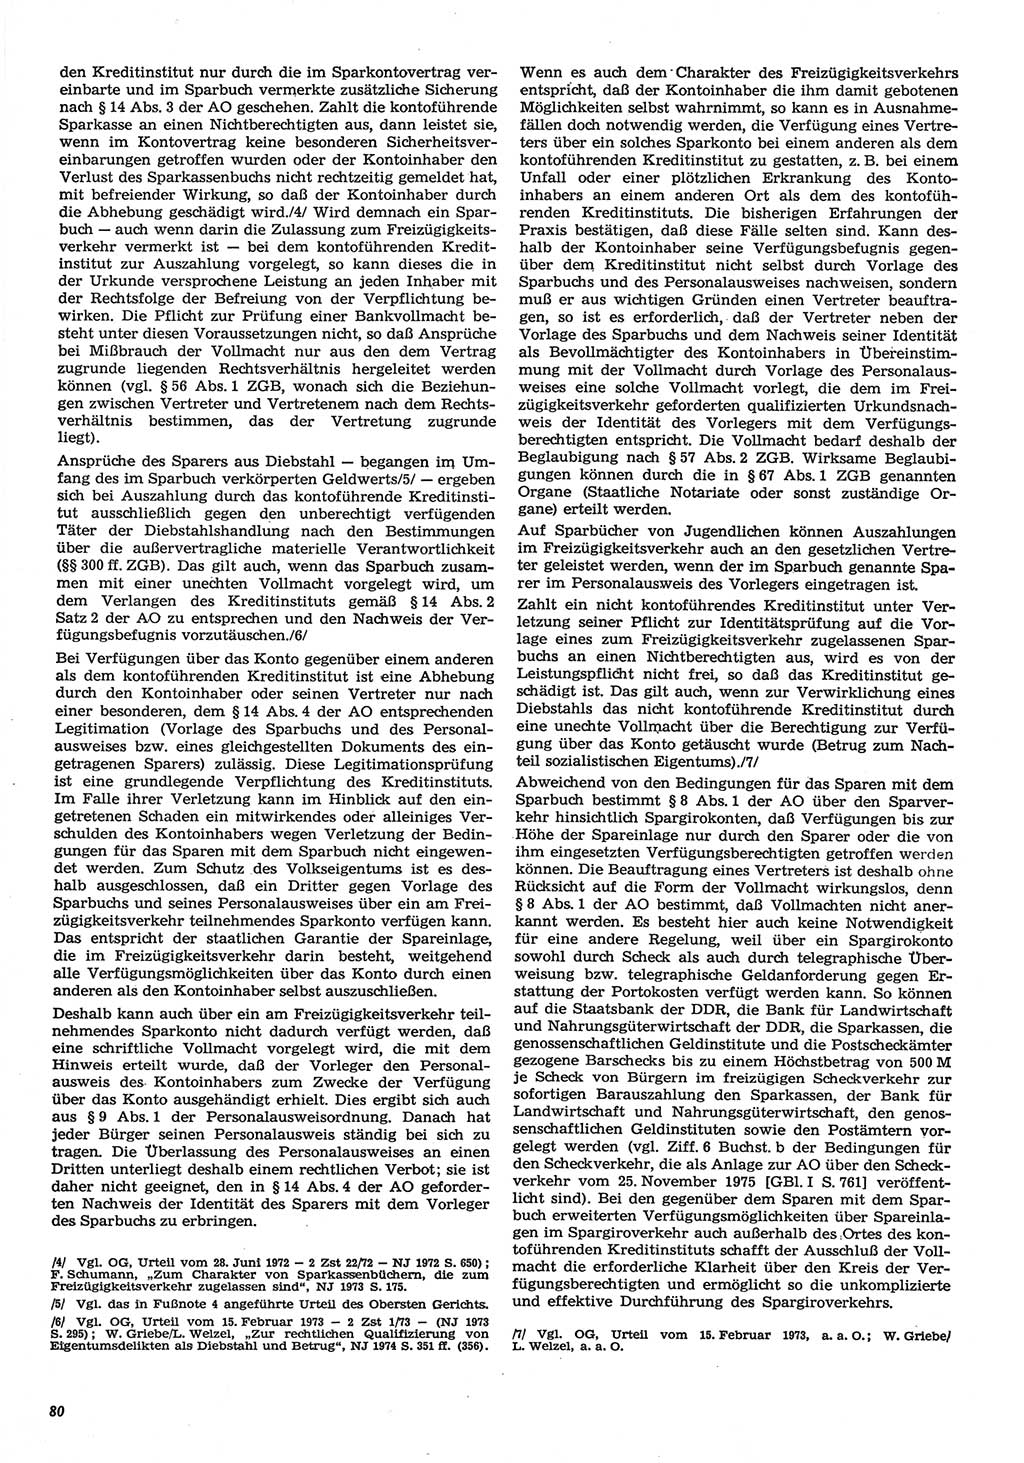 Neue Justiz (NJ), Zeitschrift für Recht und Rechtswissenschaft-Zeitschrift, sozialistisches Recht und Gesetzlichkeit, 31. Jahrgang 1977, Seite 80 (NJ DDR 1977, S. 80)